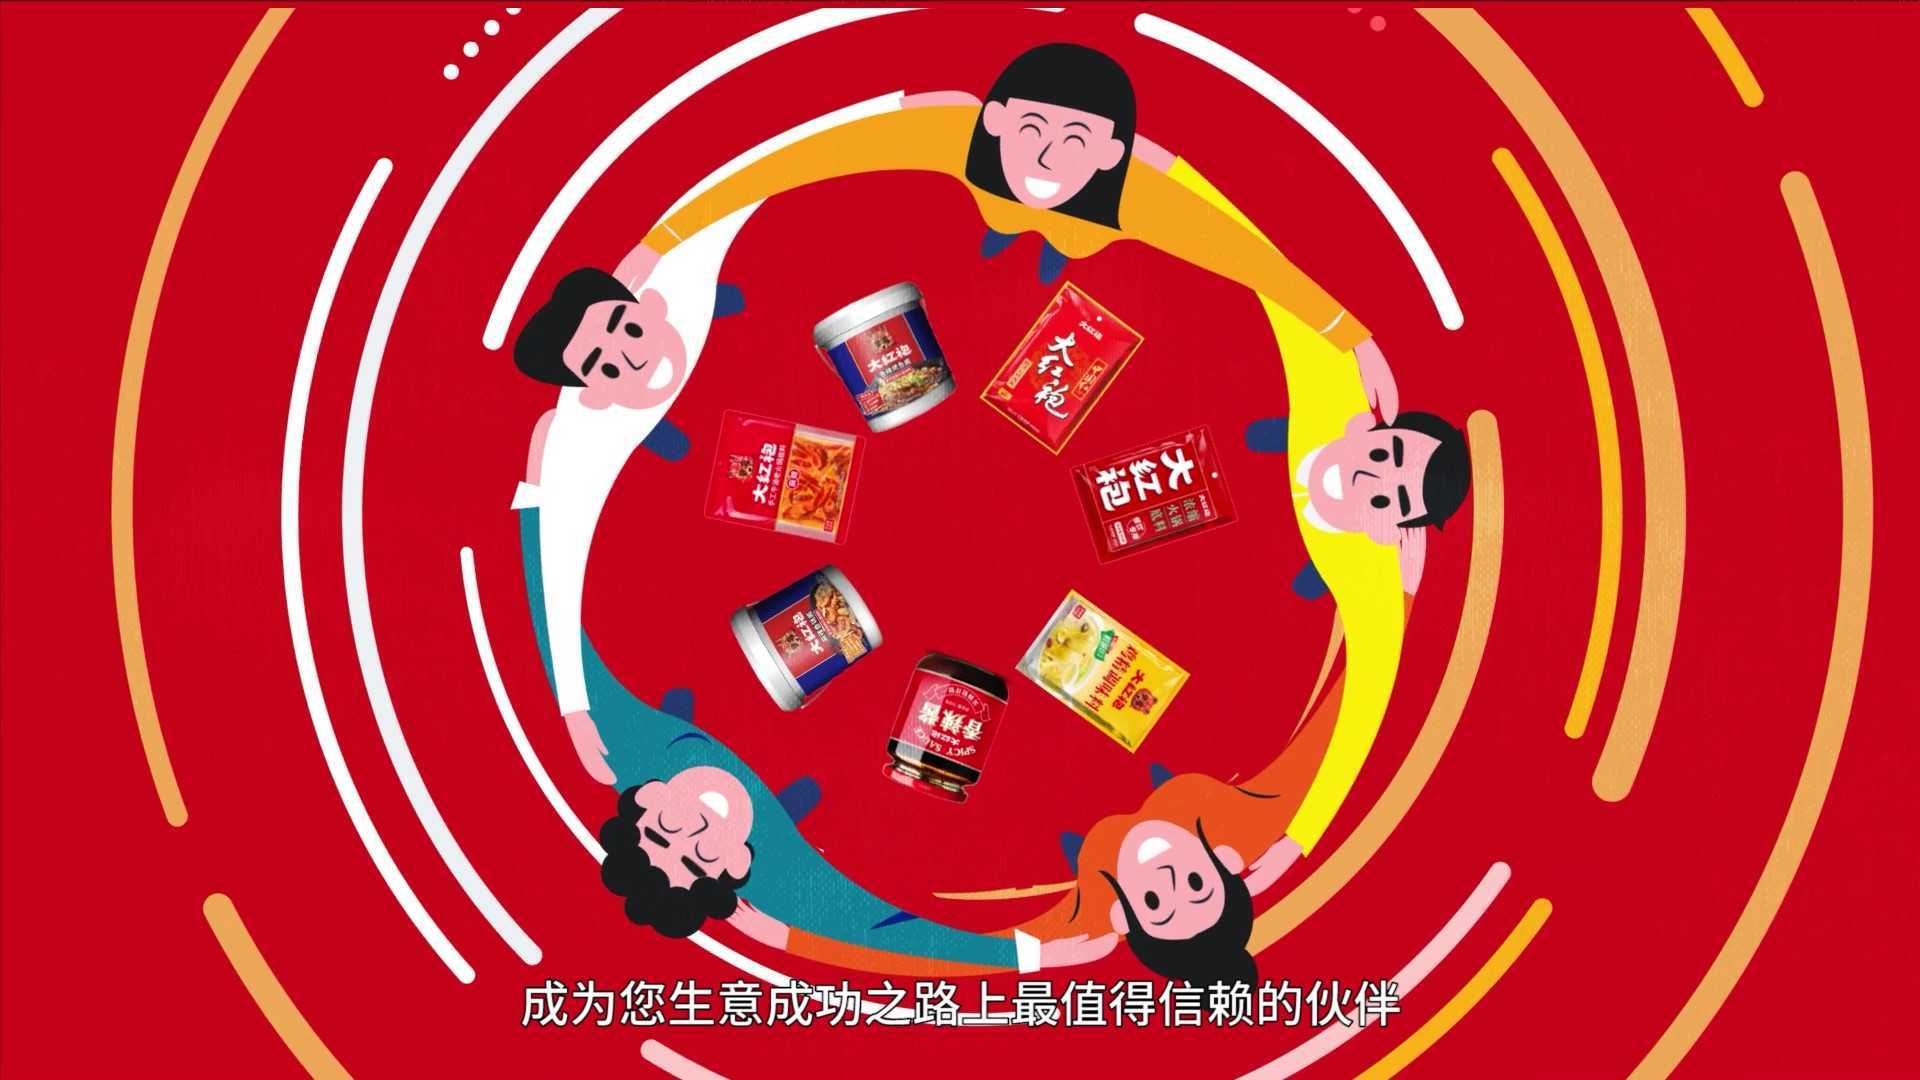 【MG动画】壹元文化X大红袍 食品餐饮企业产品动画宣传片